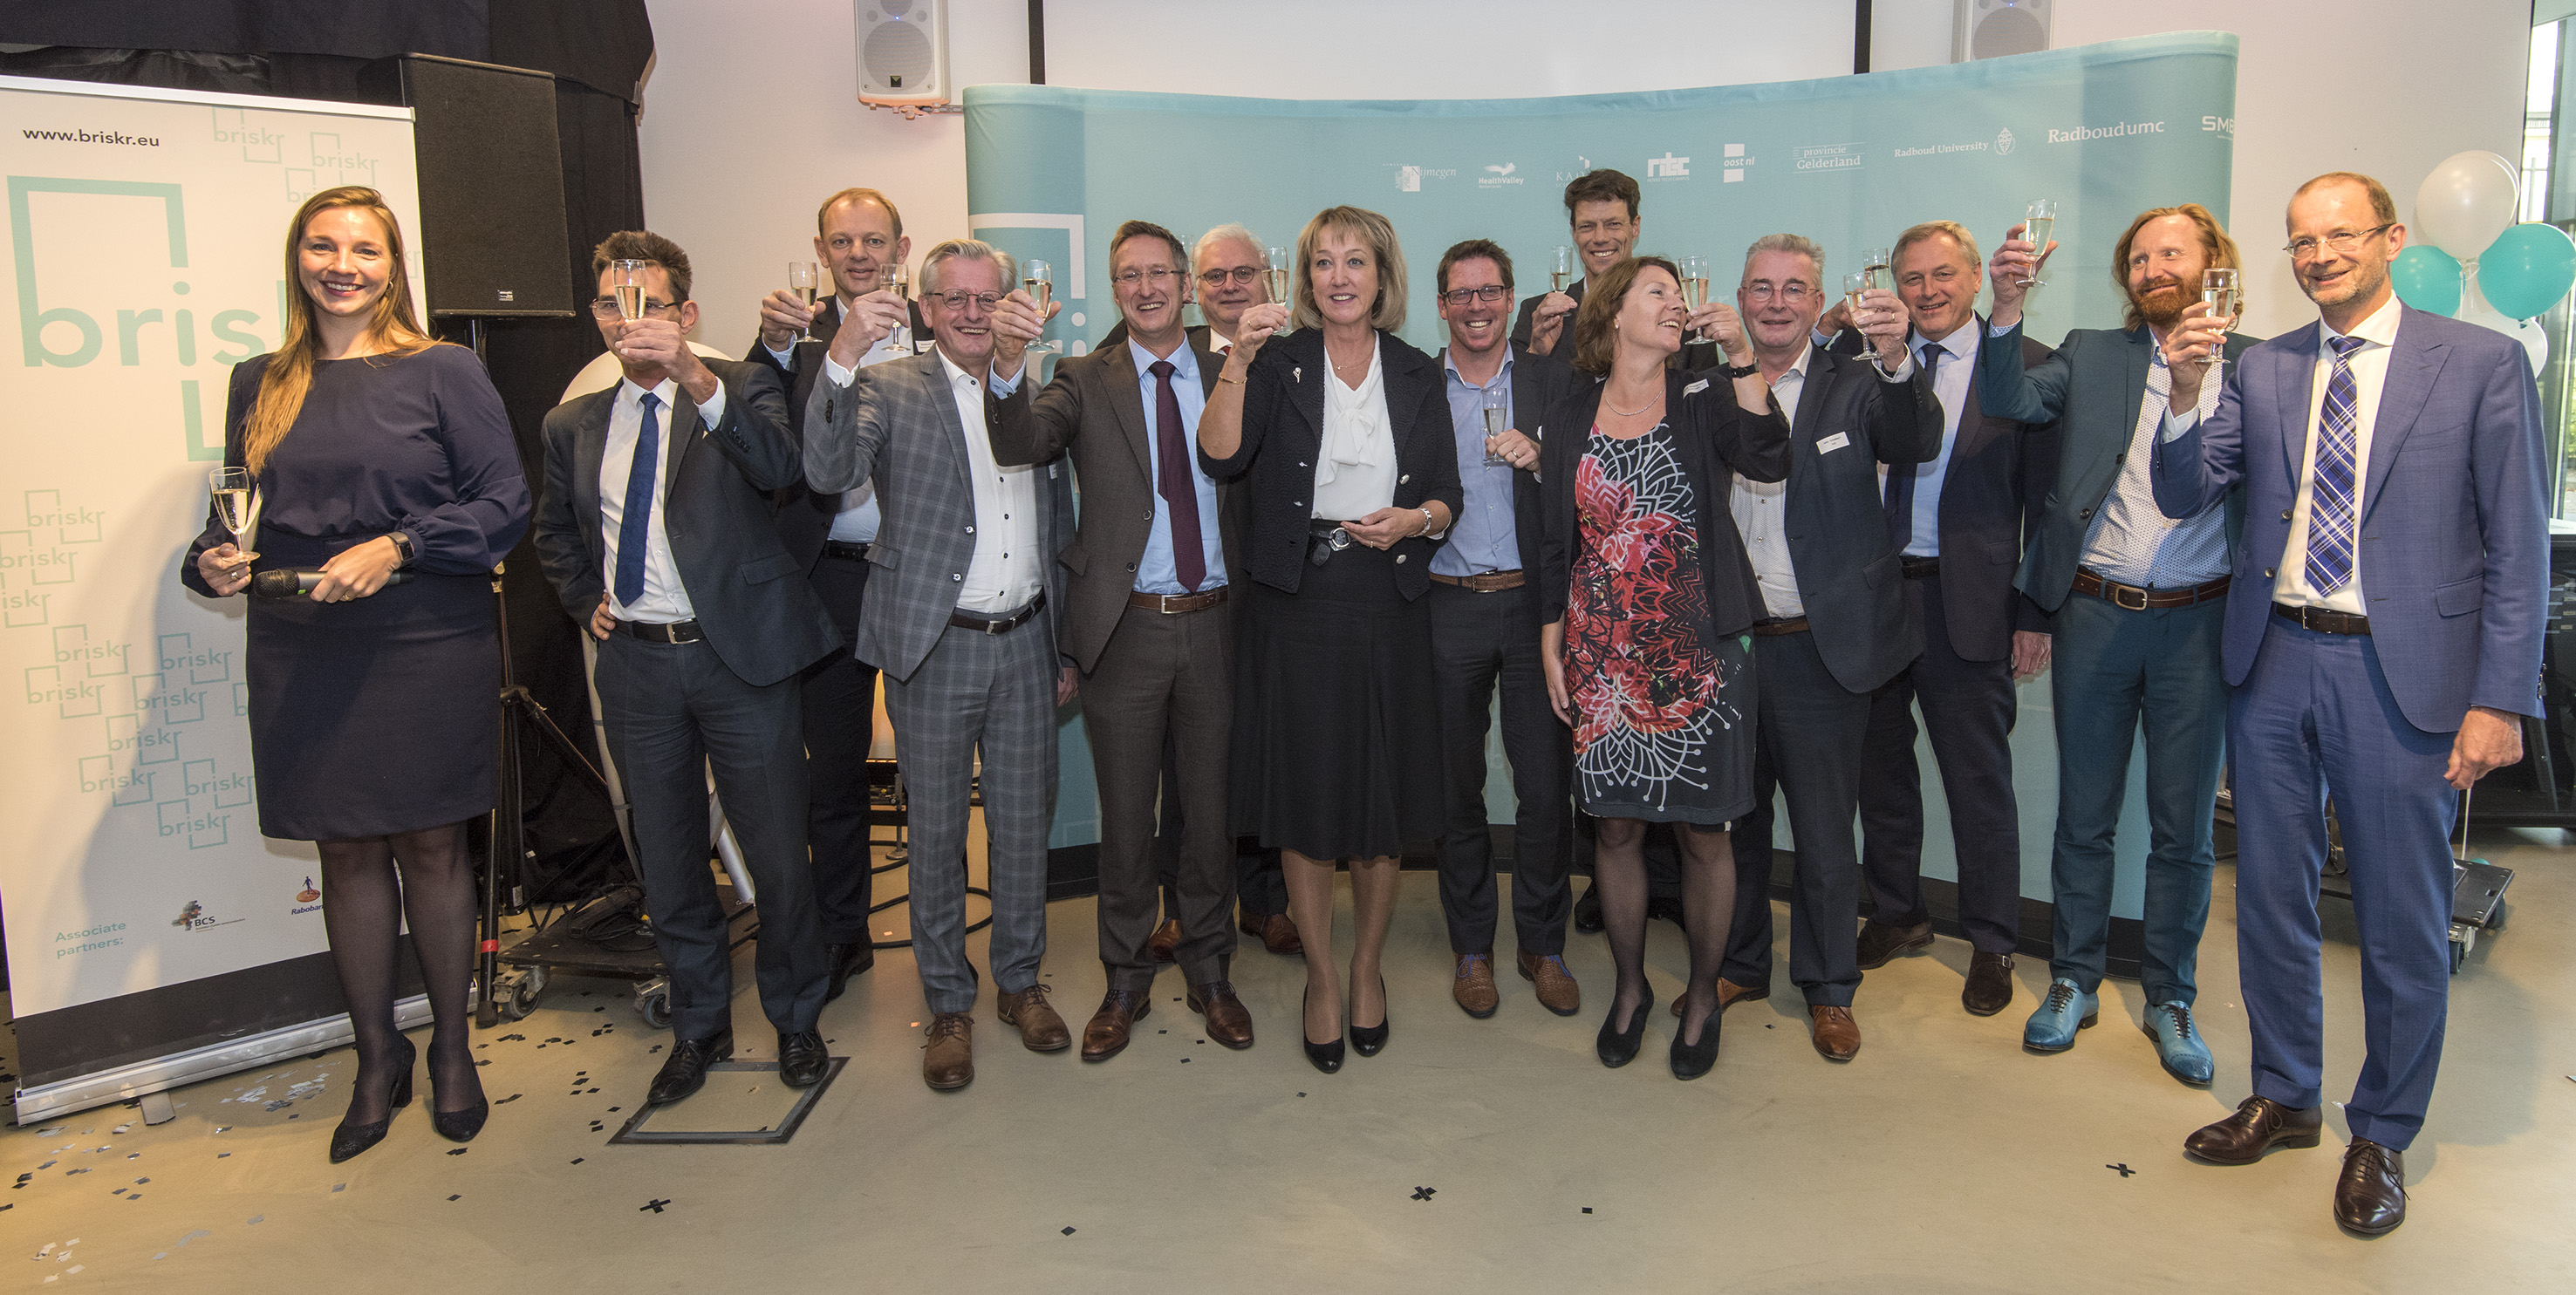 Kennisintensieve samenwerking Nijmegen neemt een vlucht met regionaal economisch stimuleringsprogramma Briskr